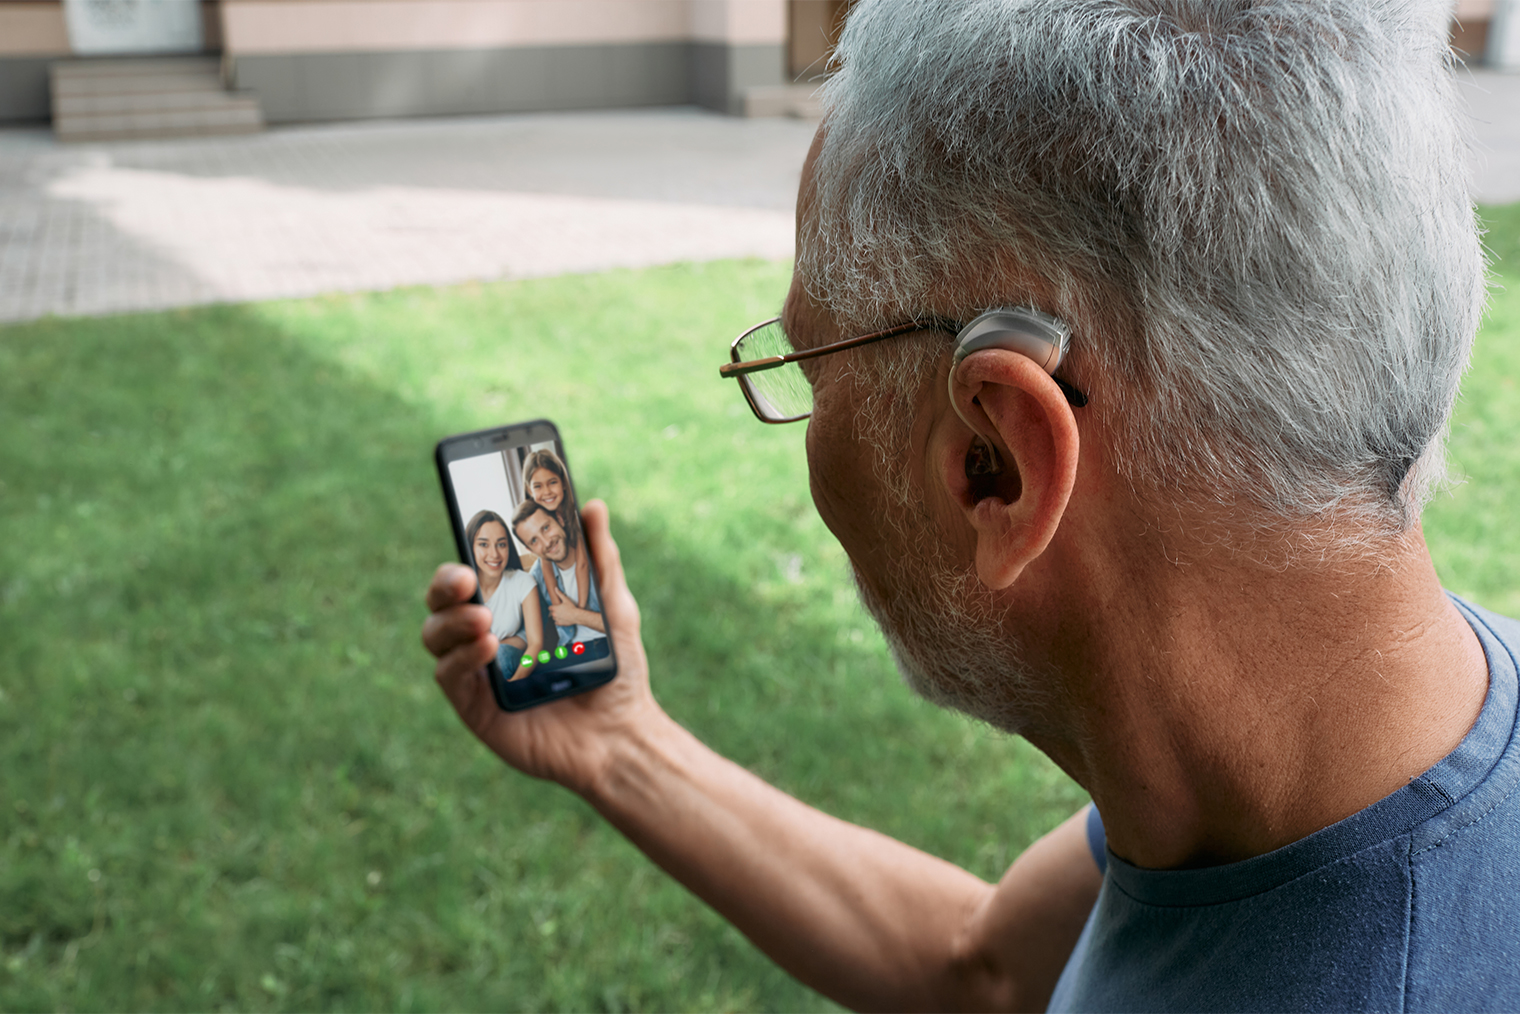 Современные слуховые аппараты больше напоминают гарнитуру для телефона. Фотография: Peakstock / Shutterstock